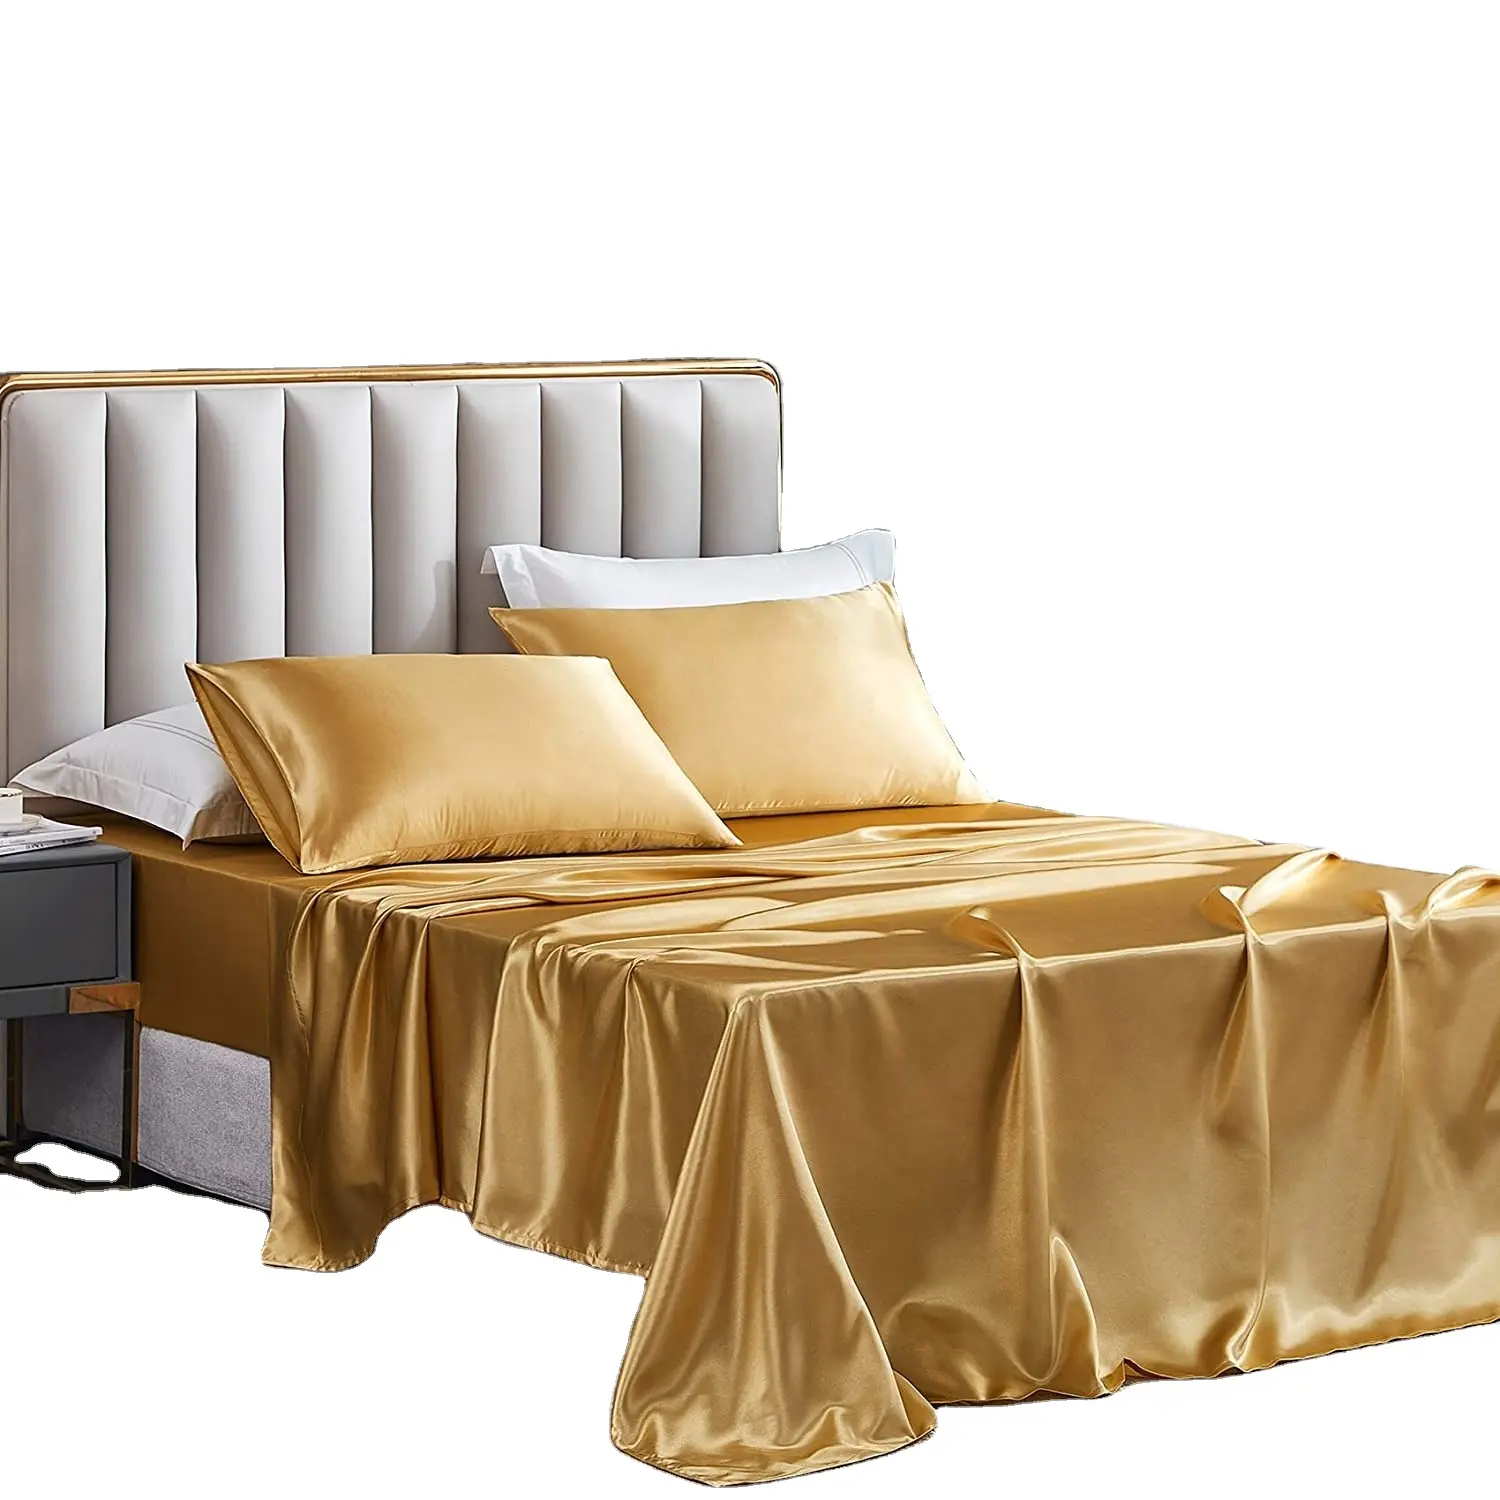 Altın rengi yapay ipek saten nevresim takımı yumuşak ipeksi Polyester kraliçe yatak çarşafı seti lüks Polyester nevresim